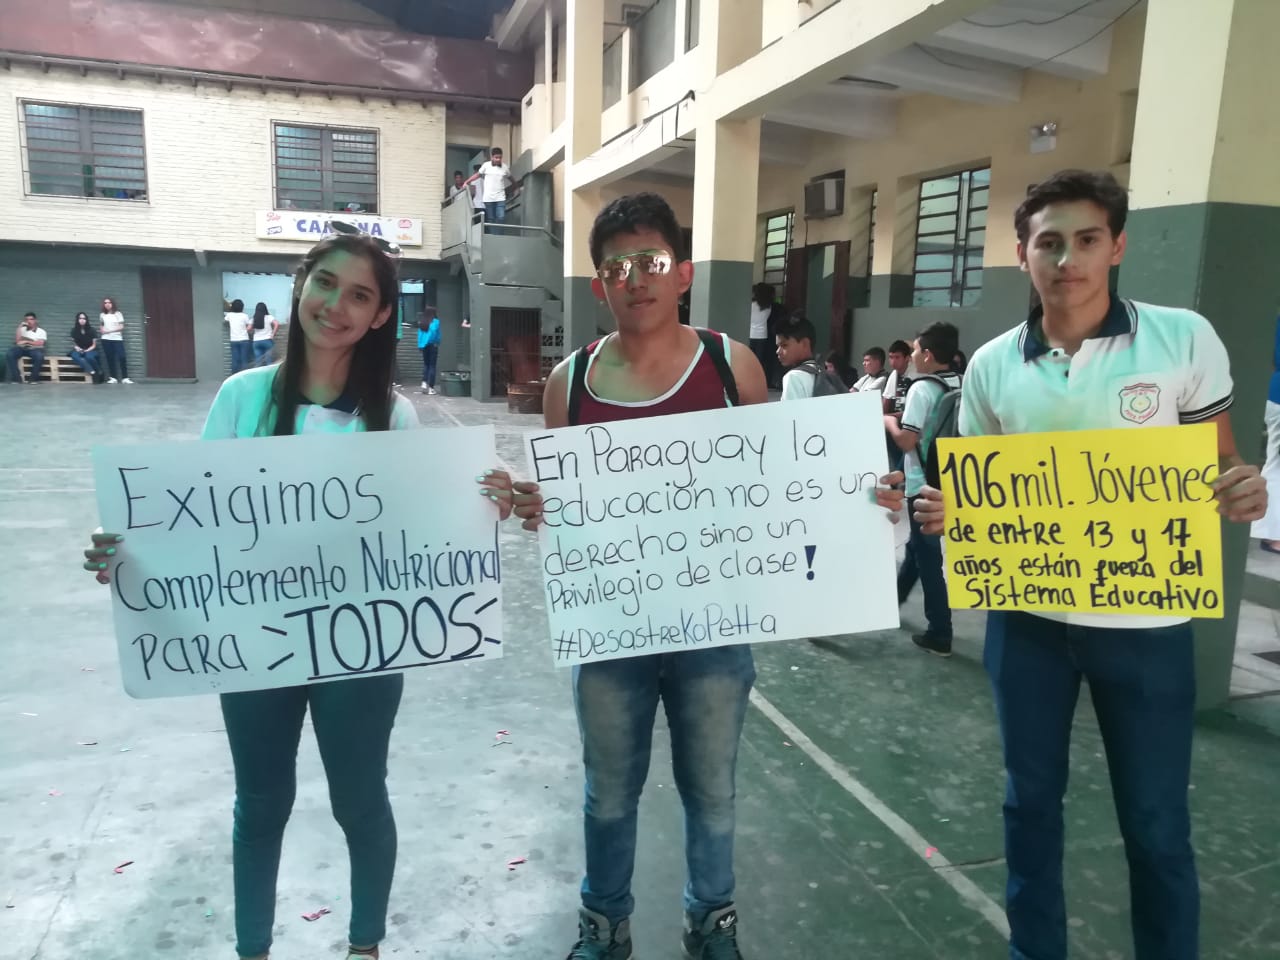 Los estudiantes reclaman soluciones, para mejorar las condiciones de los estudiantes y de los trabajadores de la educación del país.